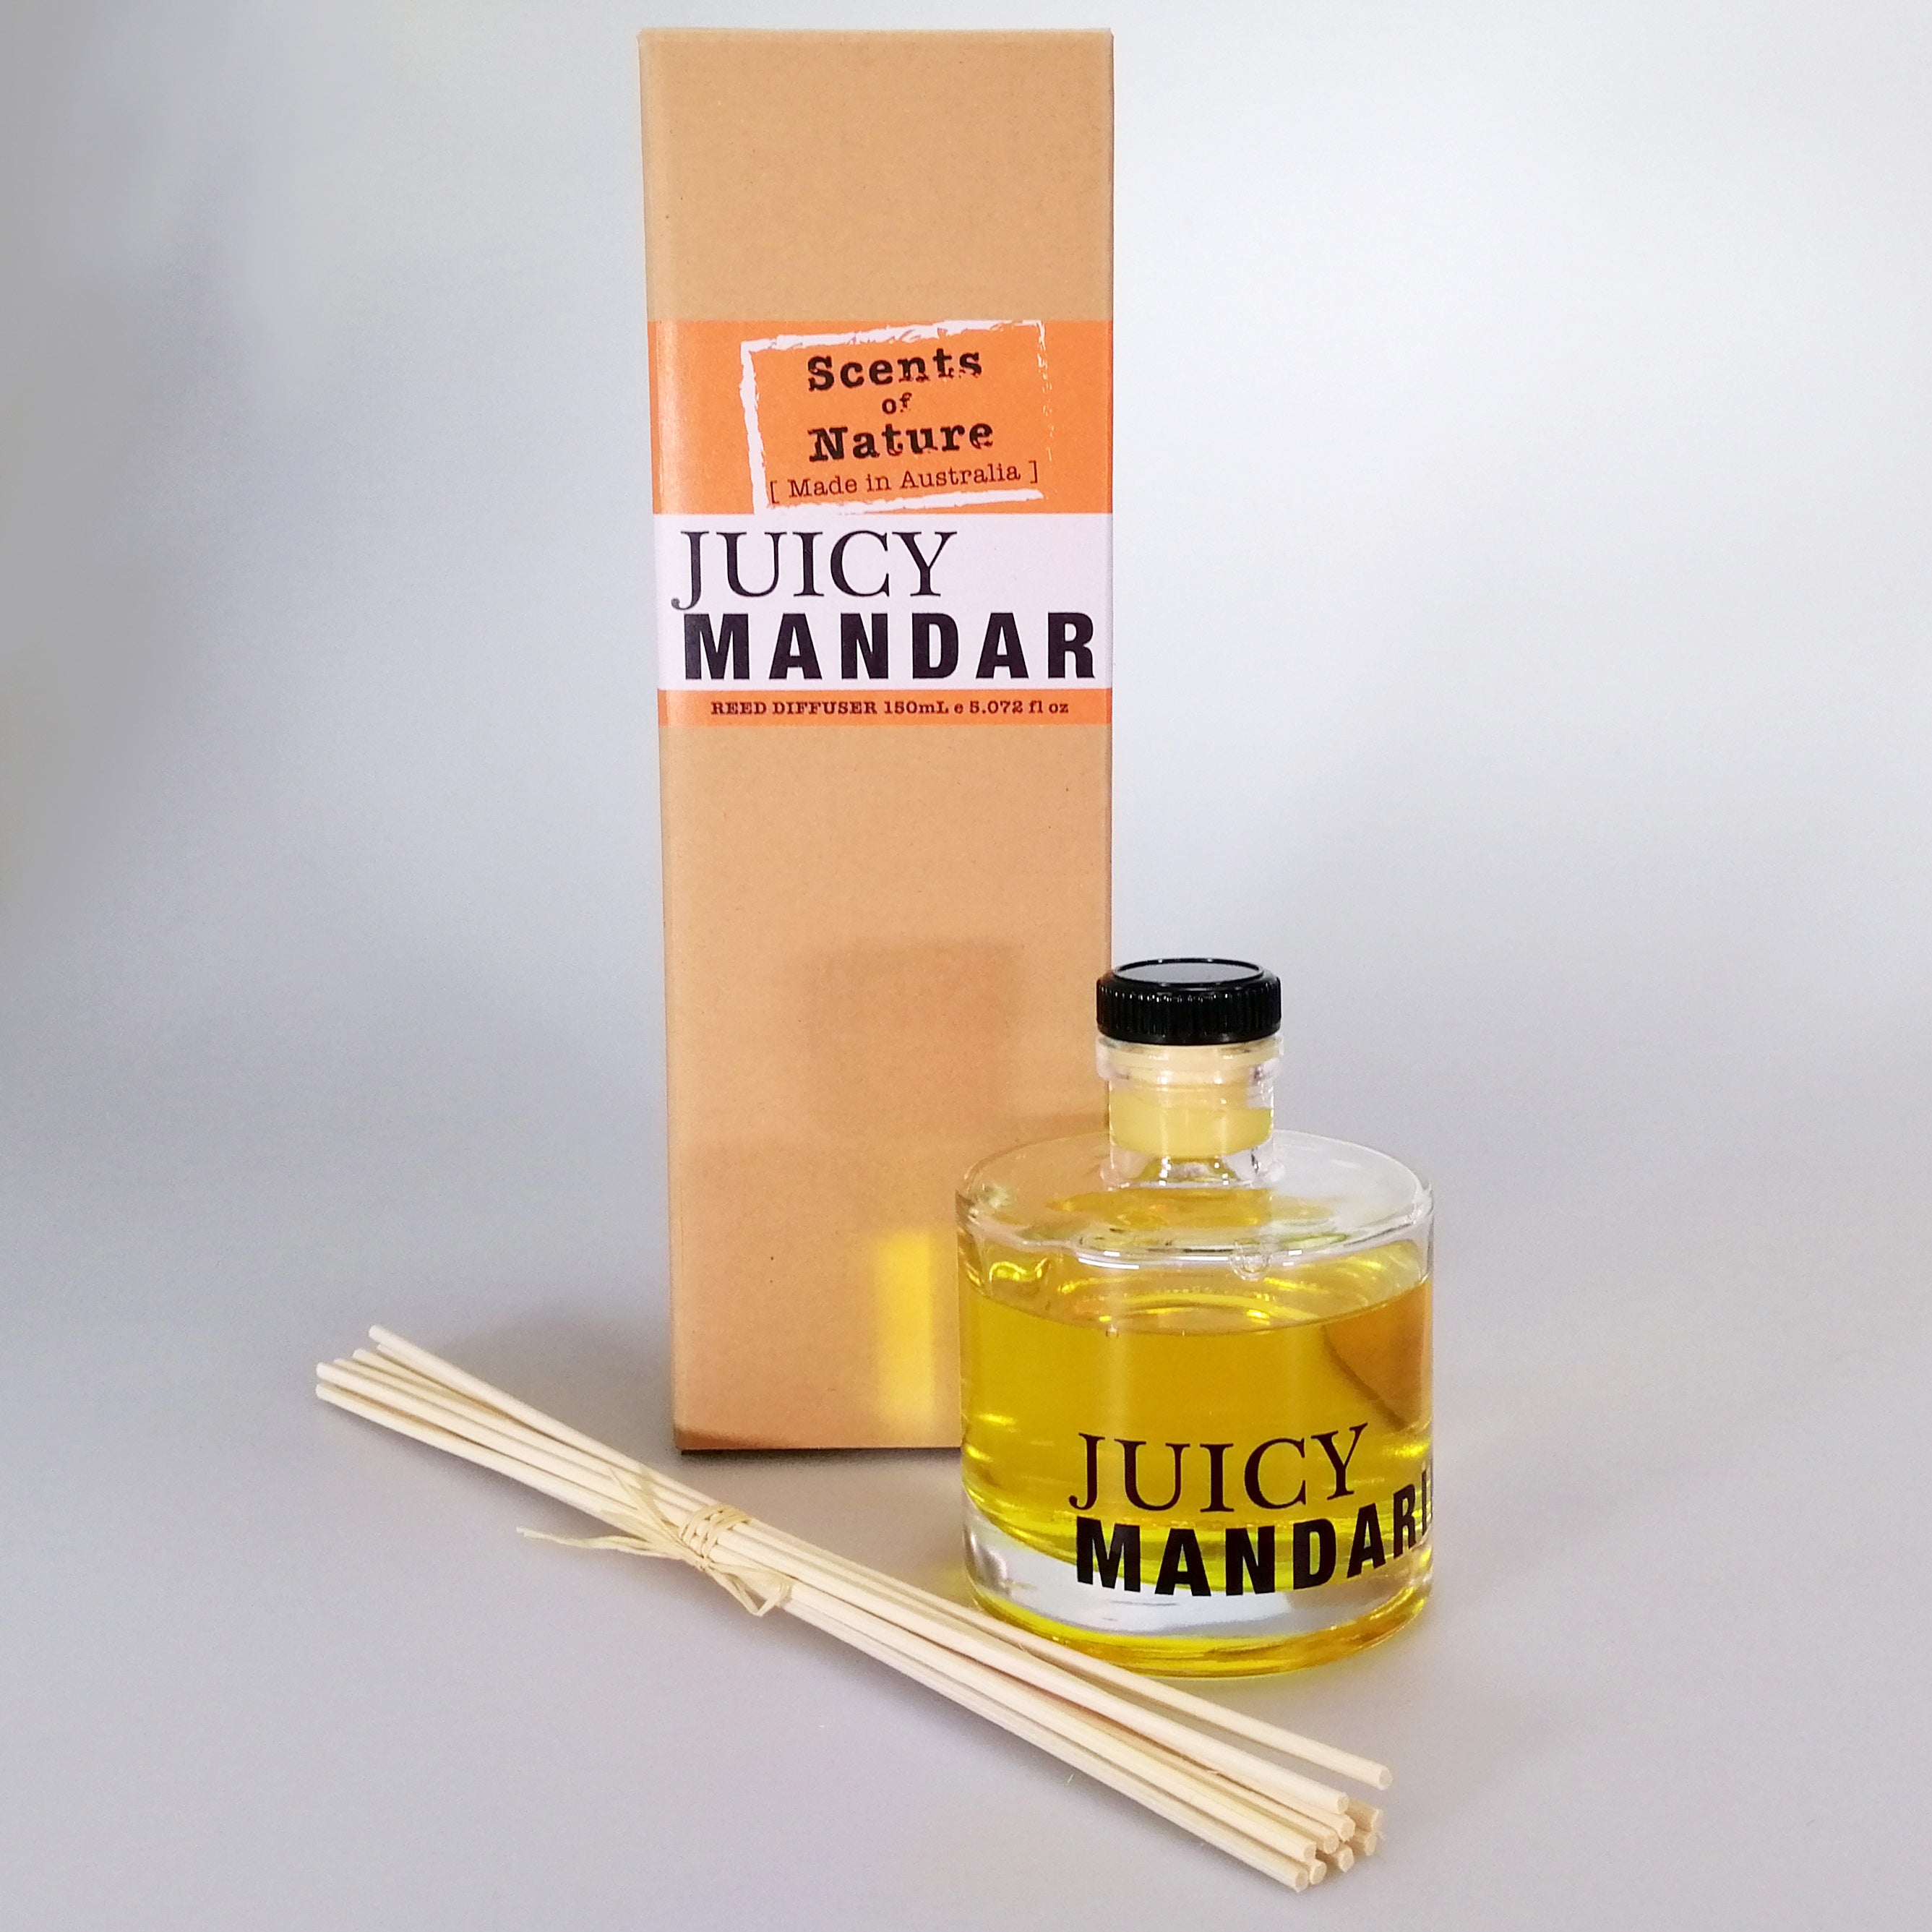 Reed Diffuser - Juicy Mandarin - 150ml